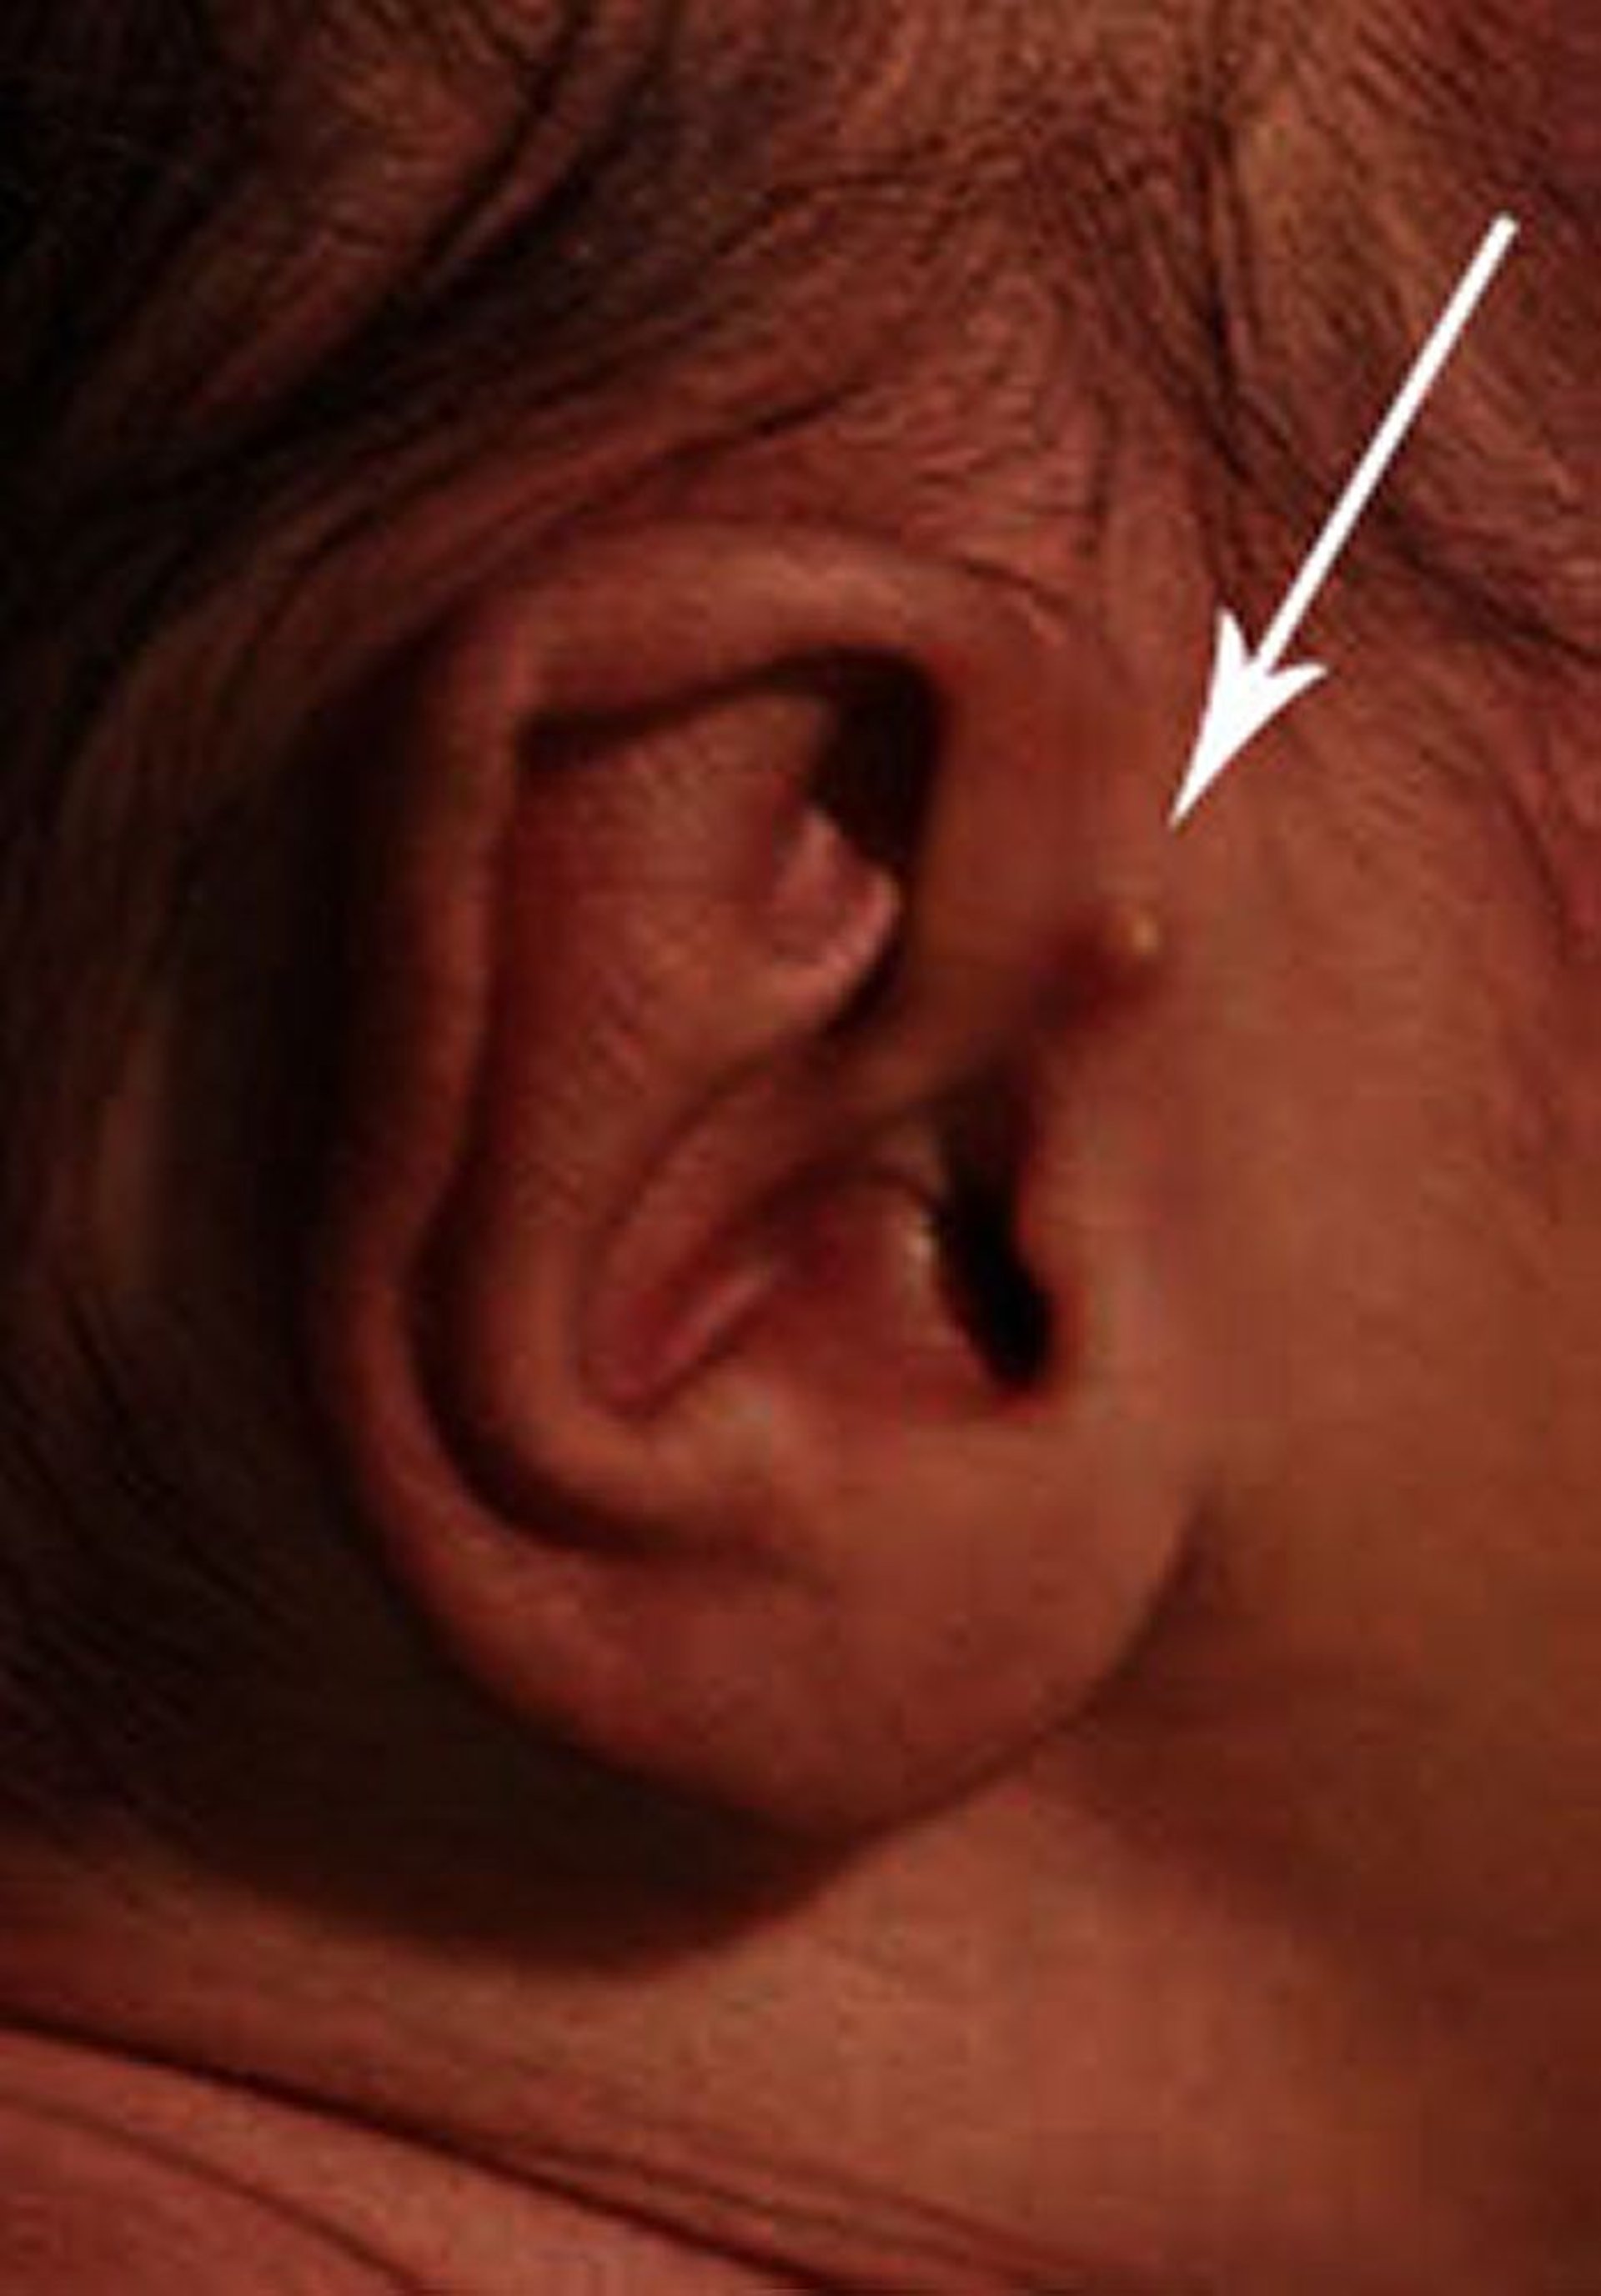 Acrochordon de l’oreille